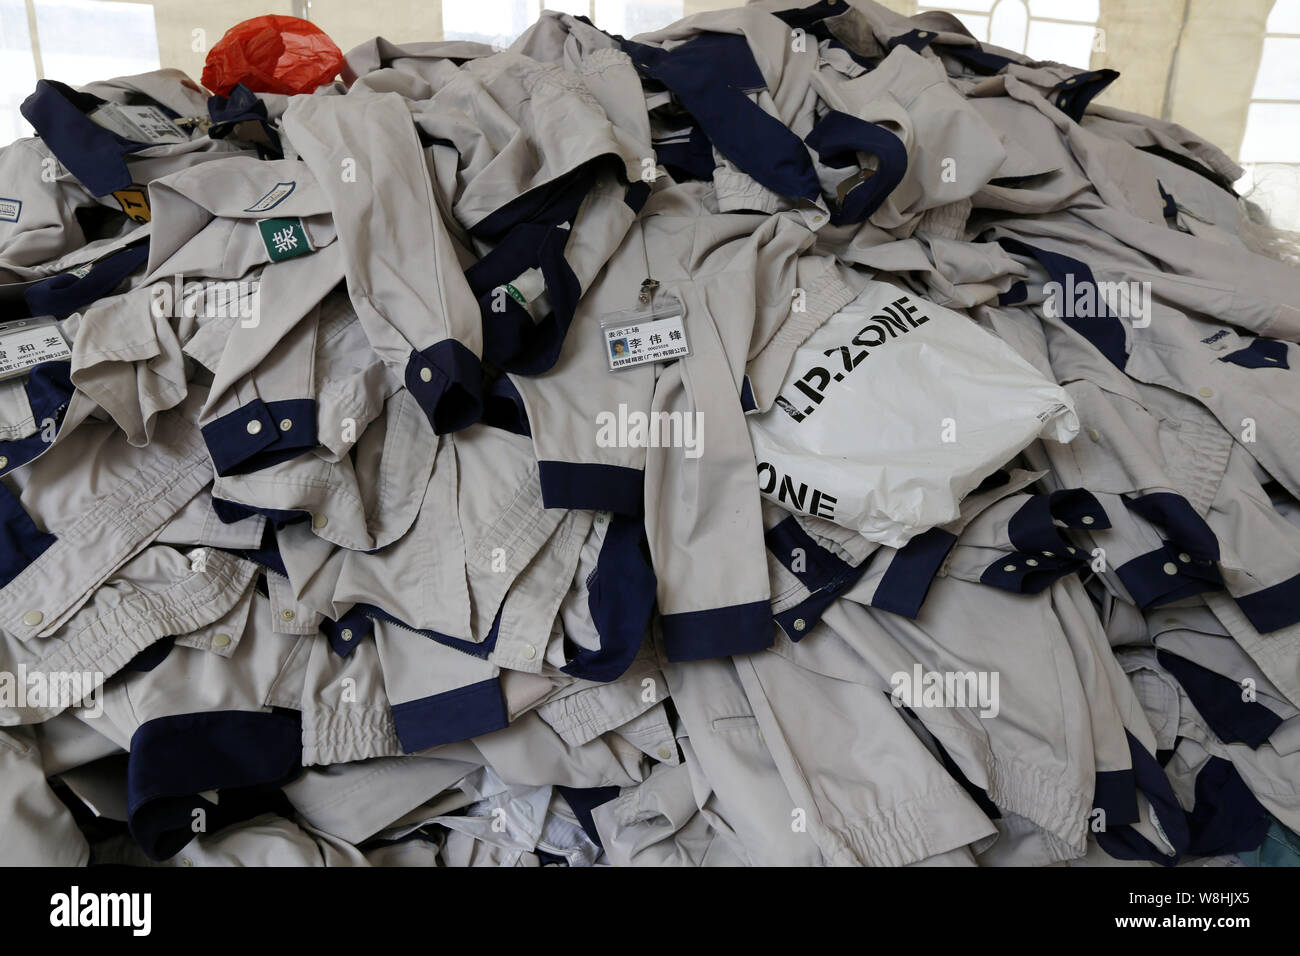 Les uniformes des employés chinois sont empilées jusqu'à la précision des citoyens Guangzhou Ltd, qui a soudainement annoncé d'arrêter jeudi dernier (5 février 2015) Banque D'Images